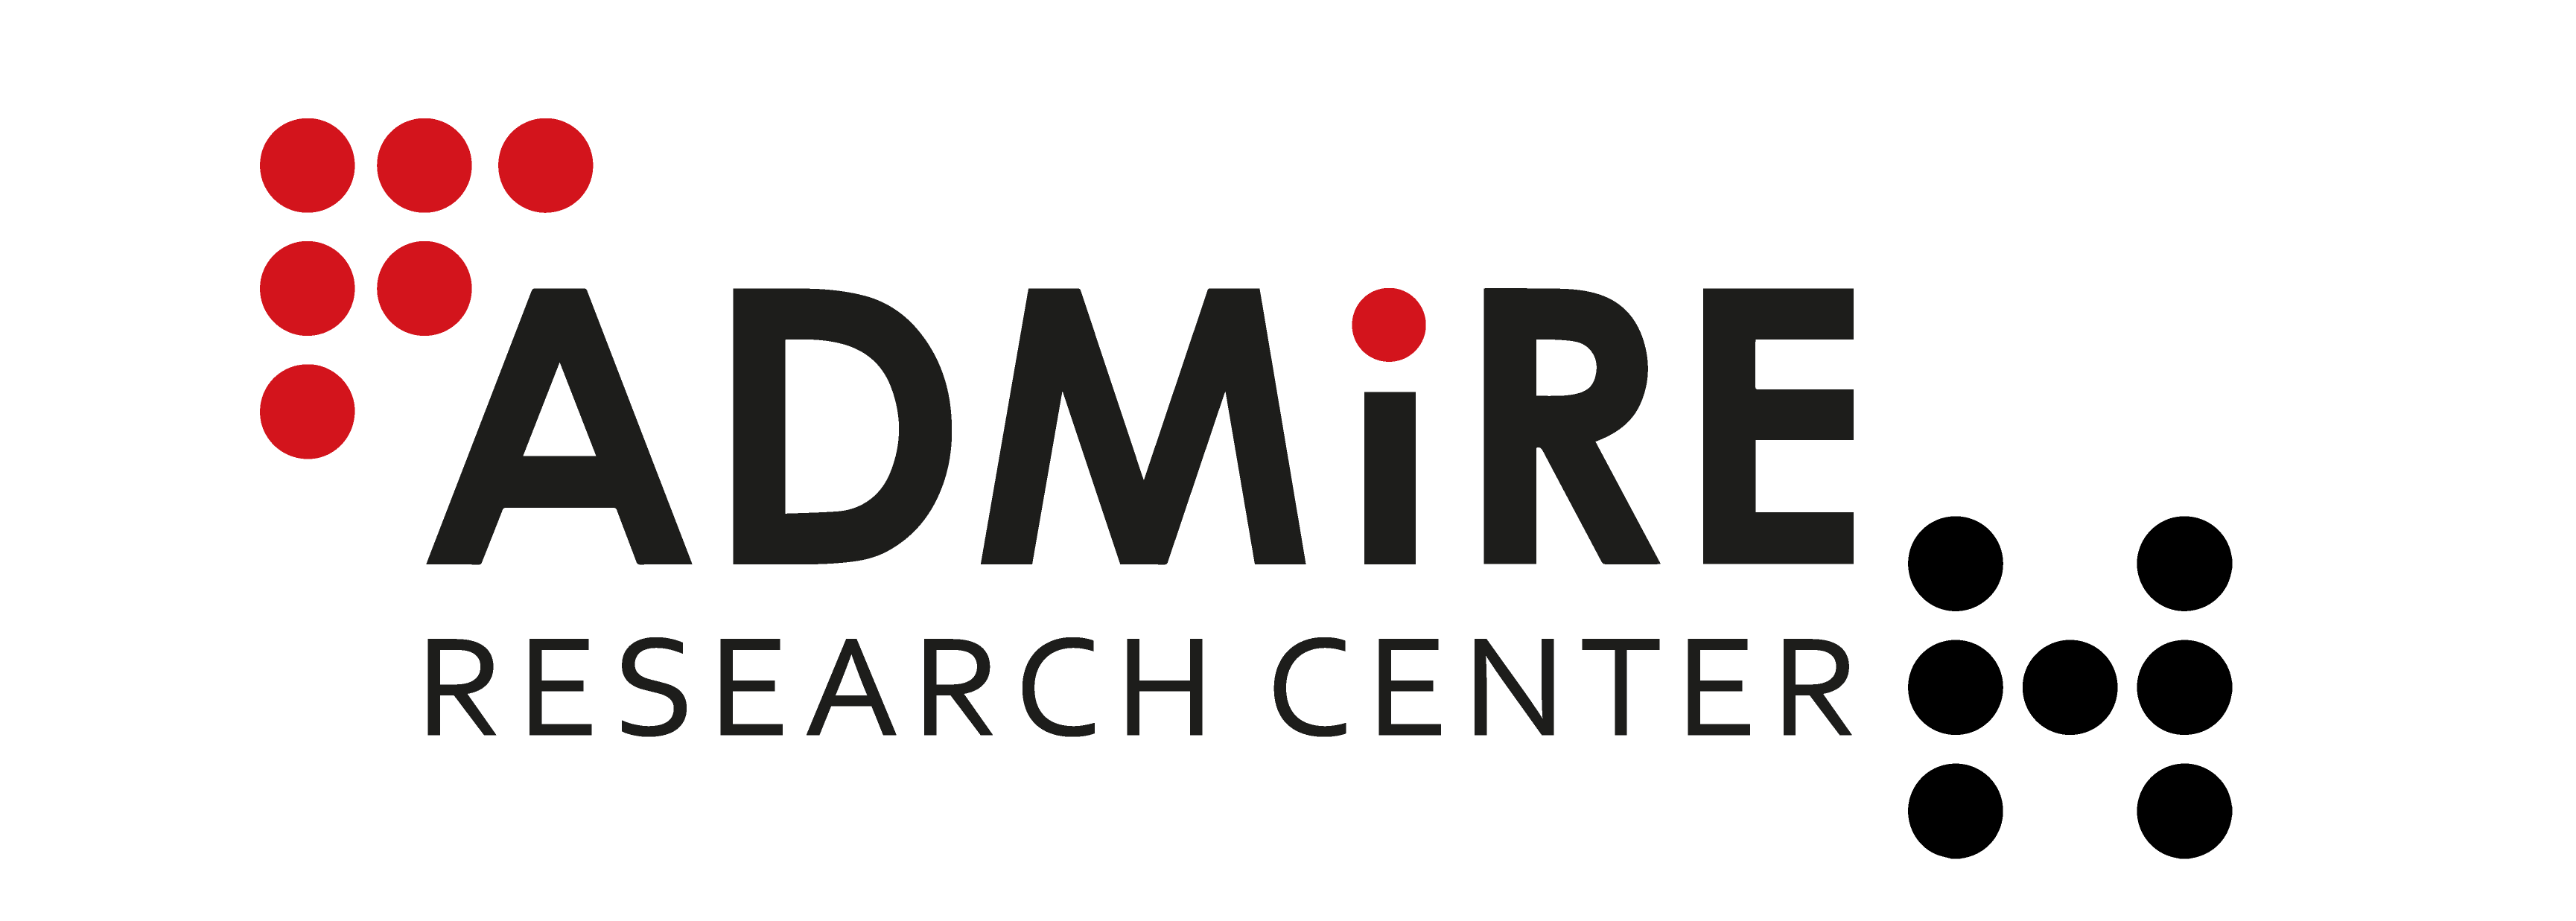 ADMiRE Research Center